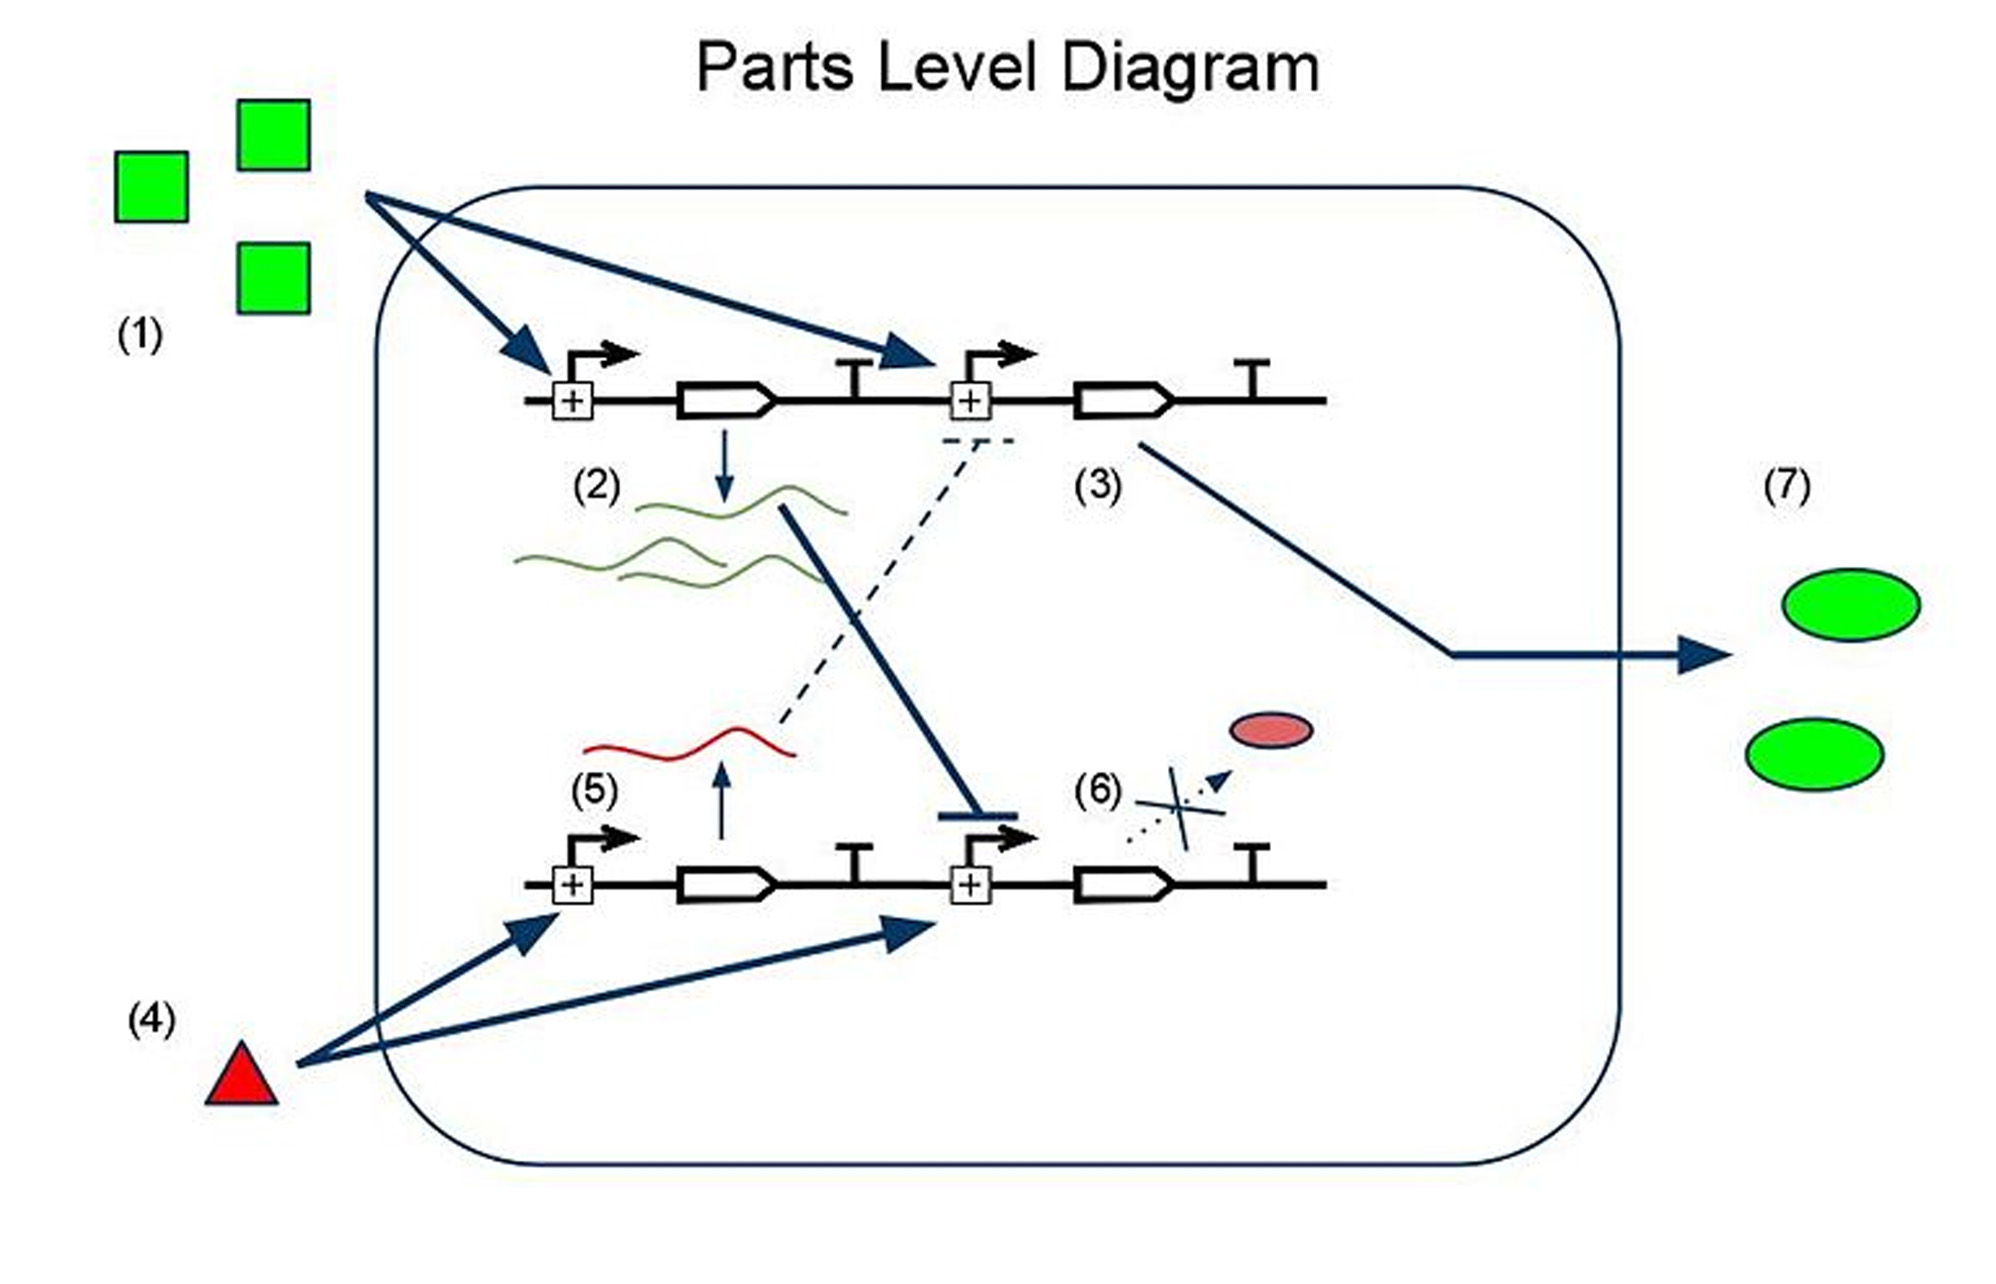 A parts-level diagram of our sRNA-based sensor